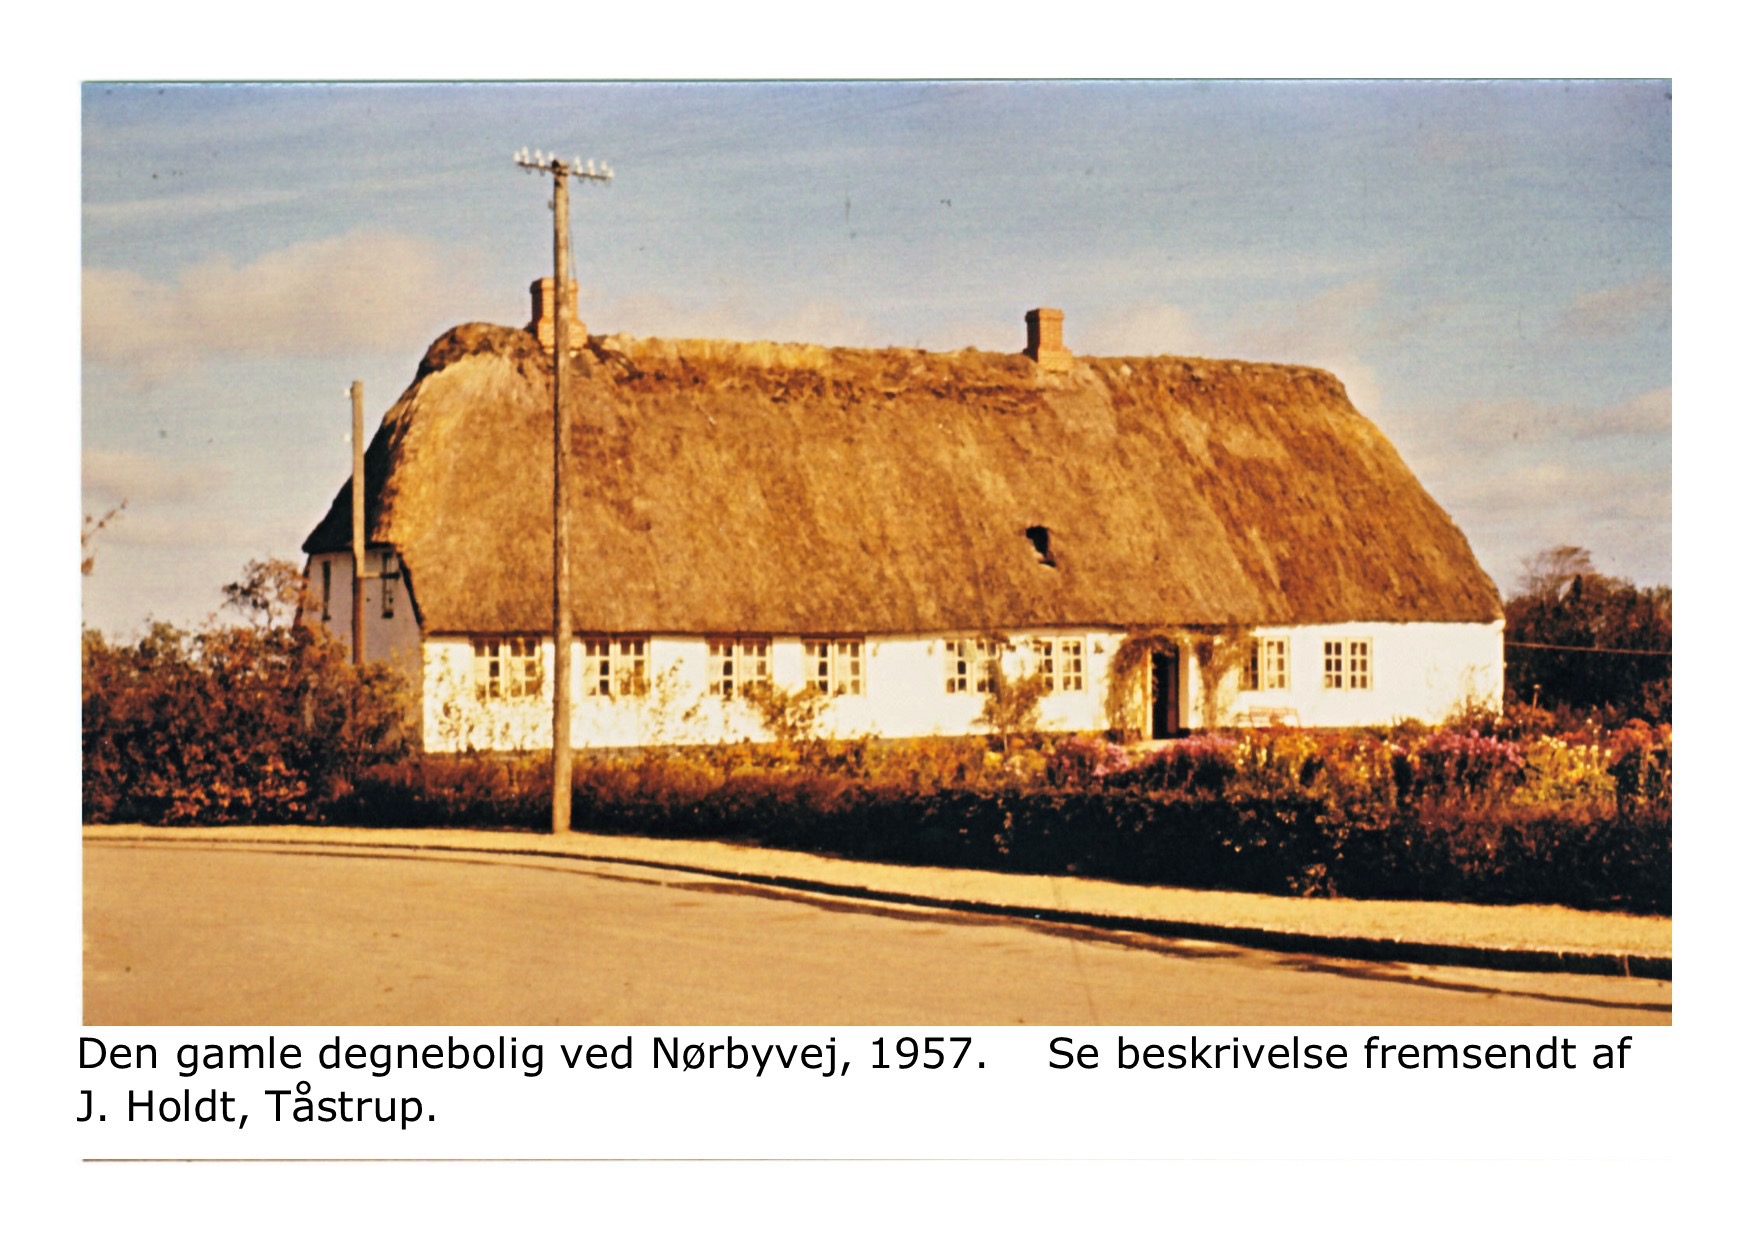 Den gamle degnebolig på Nørbyvej - 1957